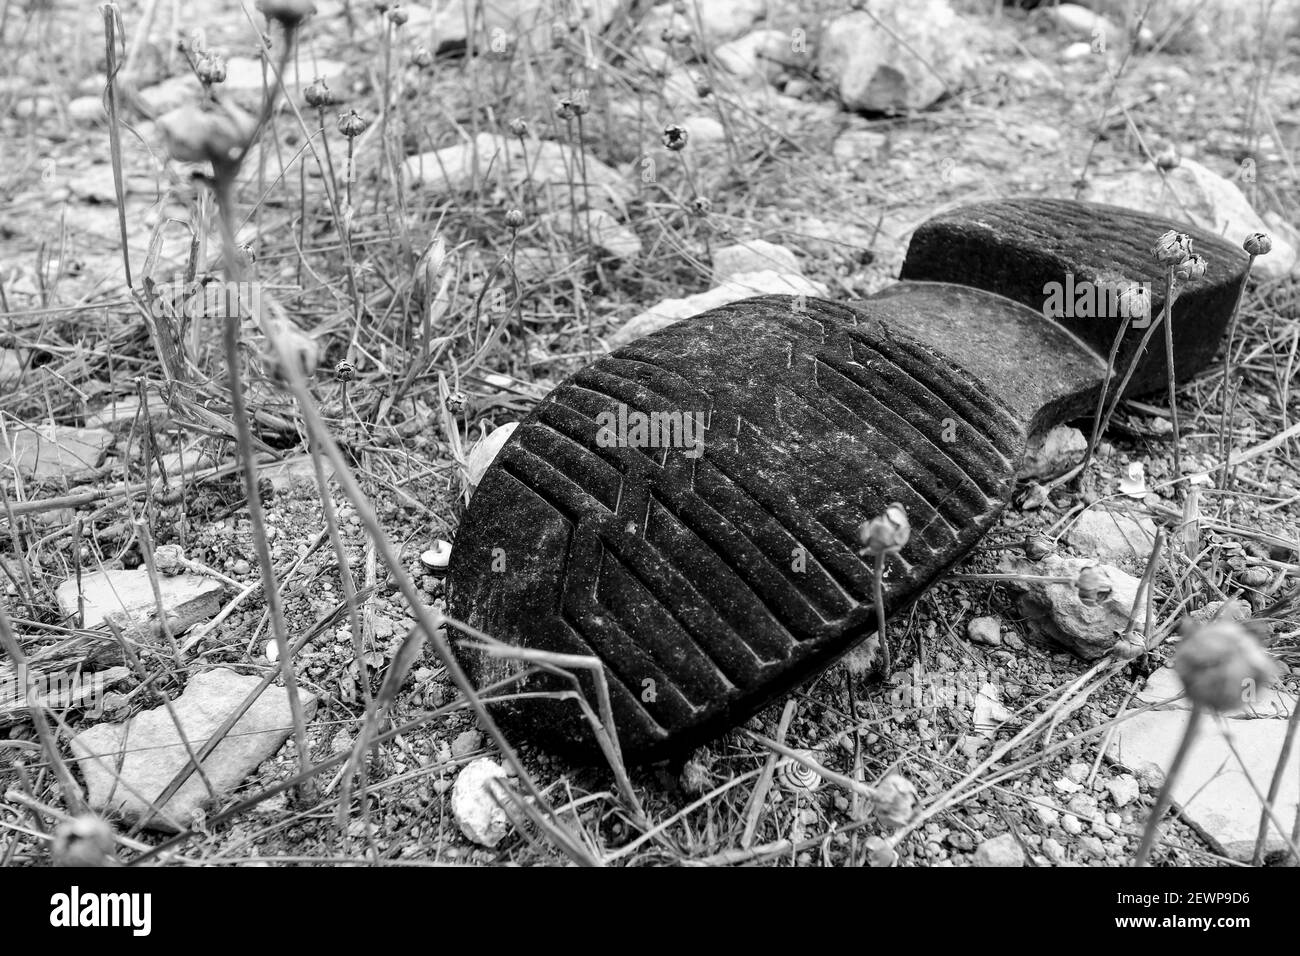 Semelle de chaussure en caoutchouc noir jetée dans la campagne en Espagne Banque D'Images